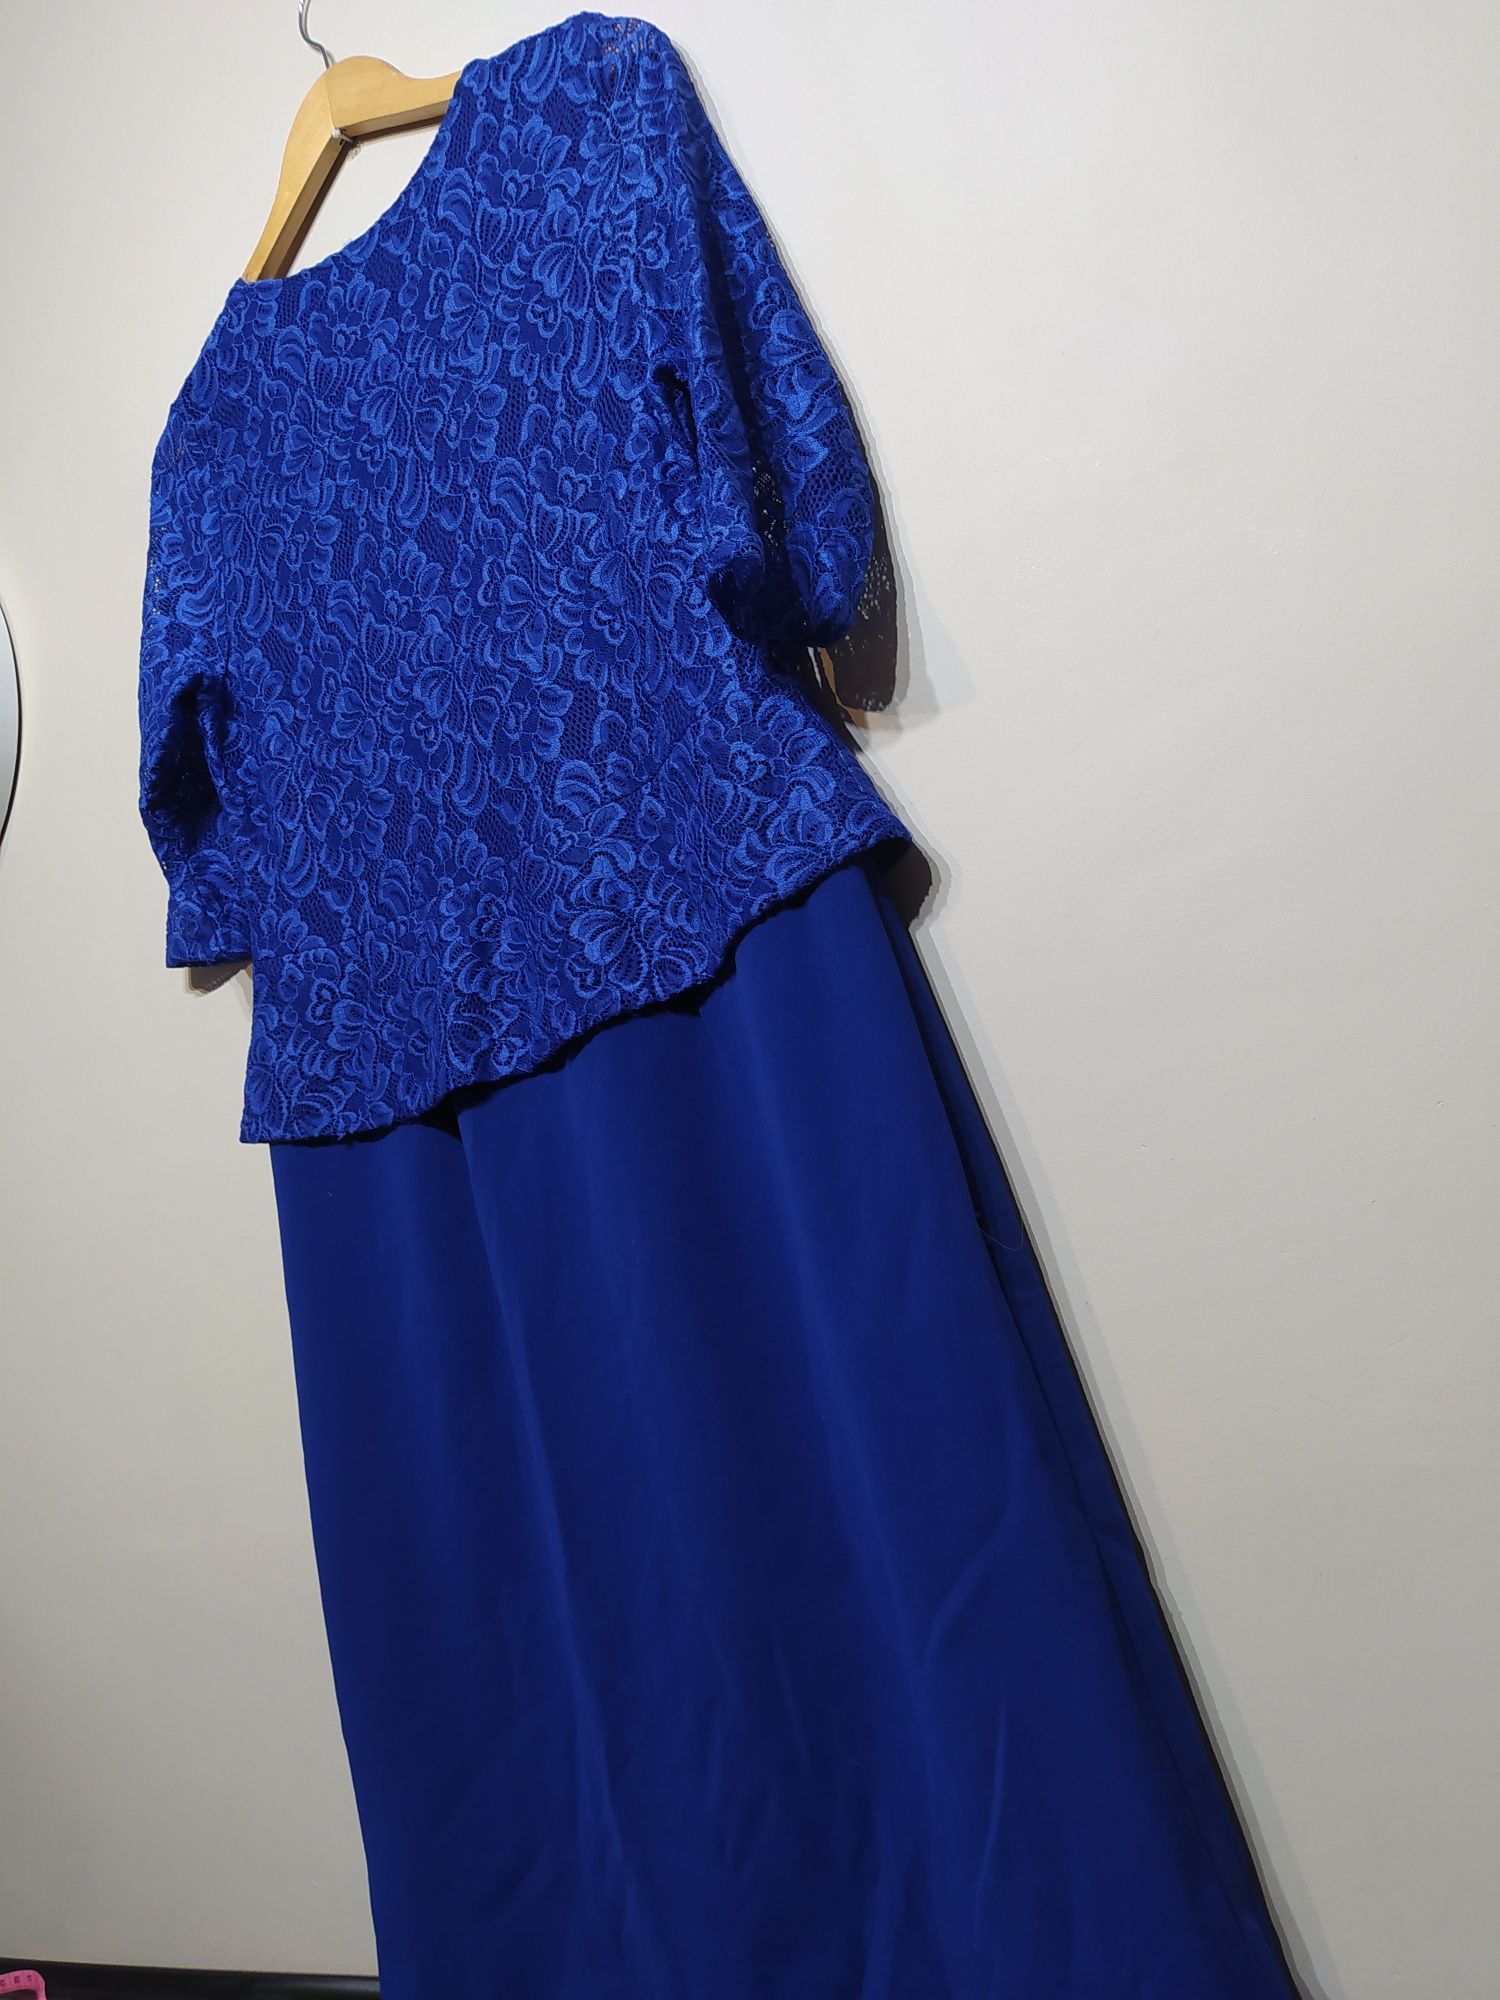 Sukienka granatowa XL/42 niebieska

Wymiary: długość całkowita 96cm, b